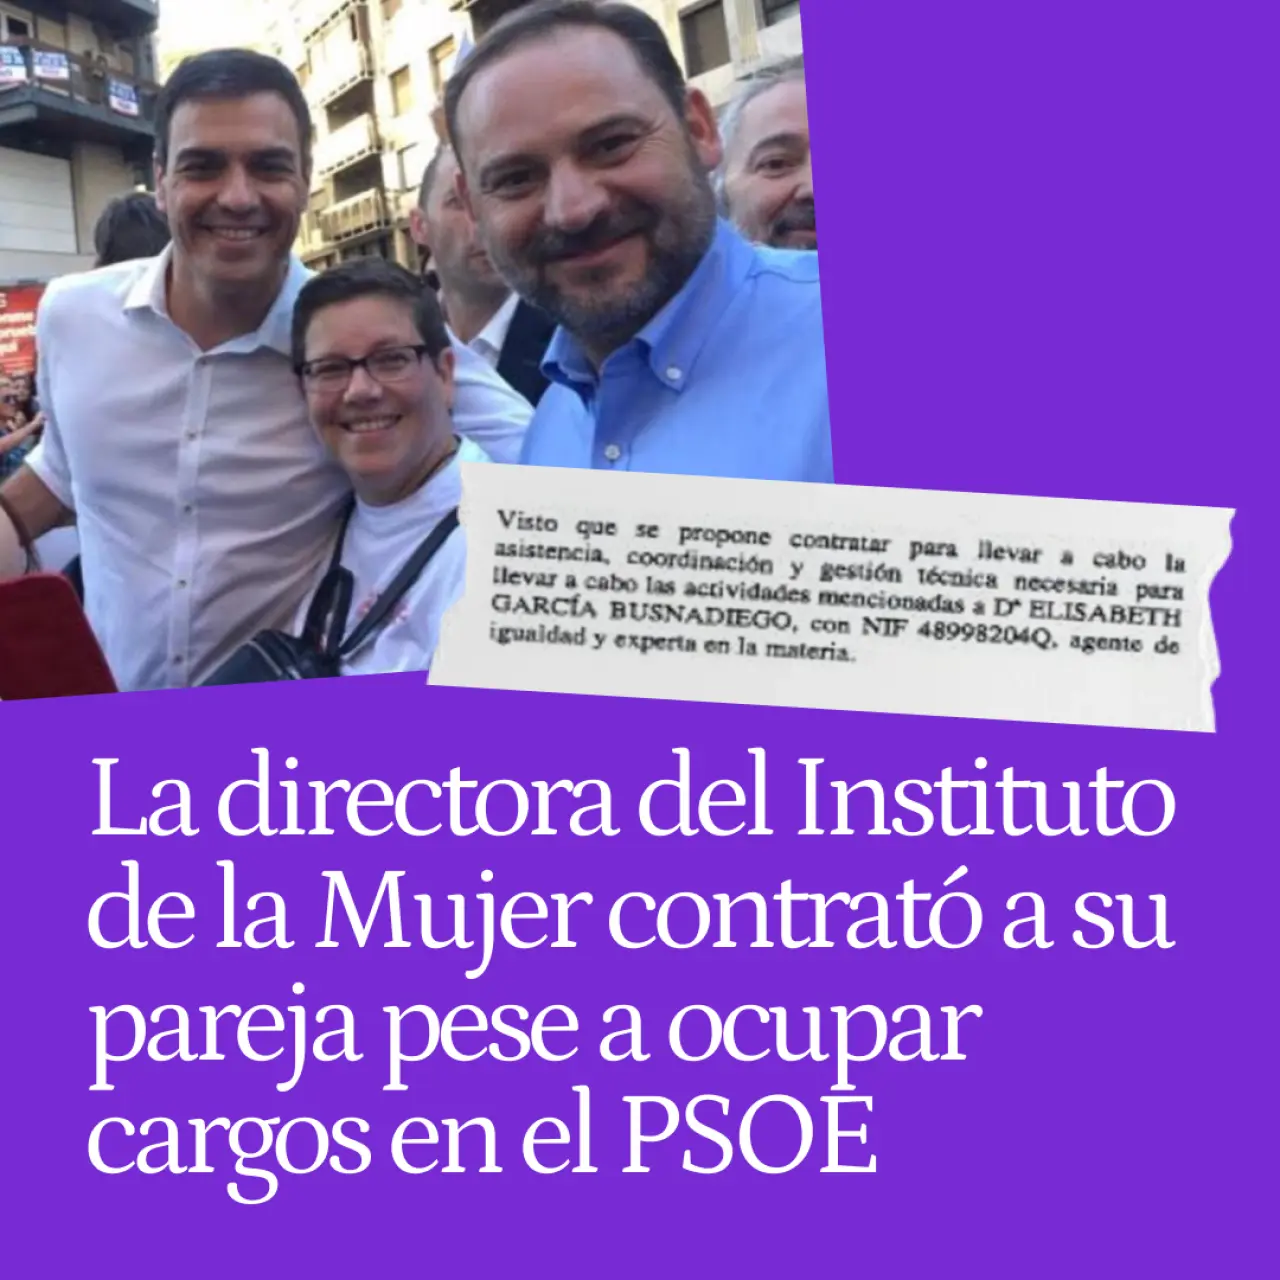 La directora del Instituto de la Mujer dio contratos a su pareja cuando llevaba Igualdad en Valencia y en la Ejecutiva del PSOE